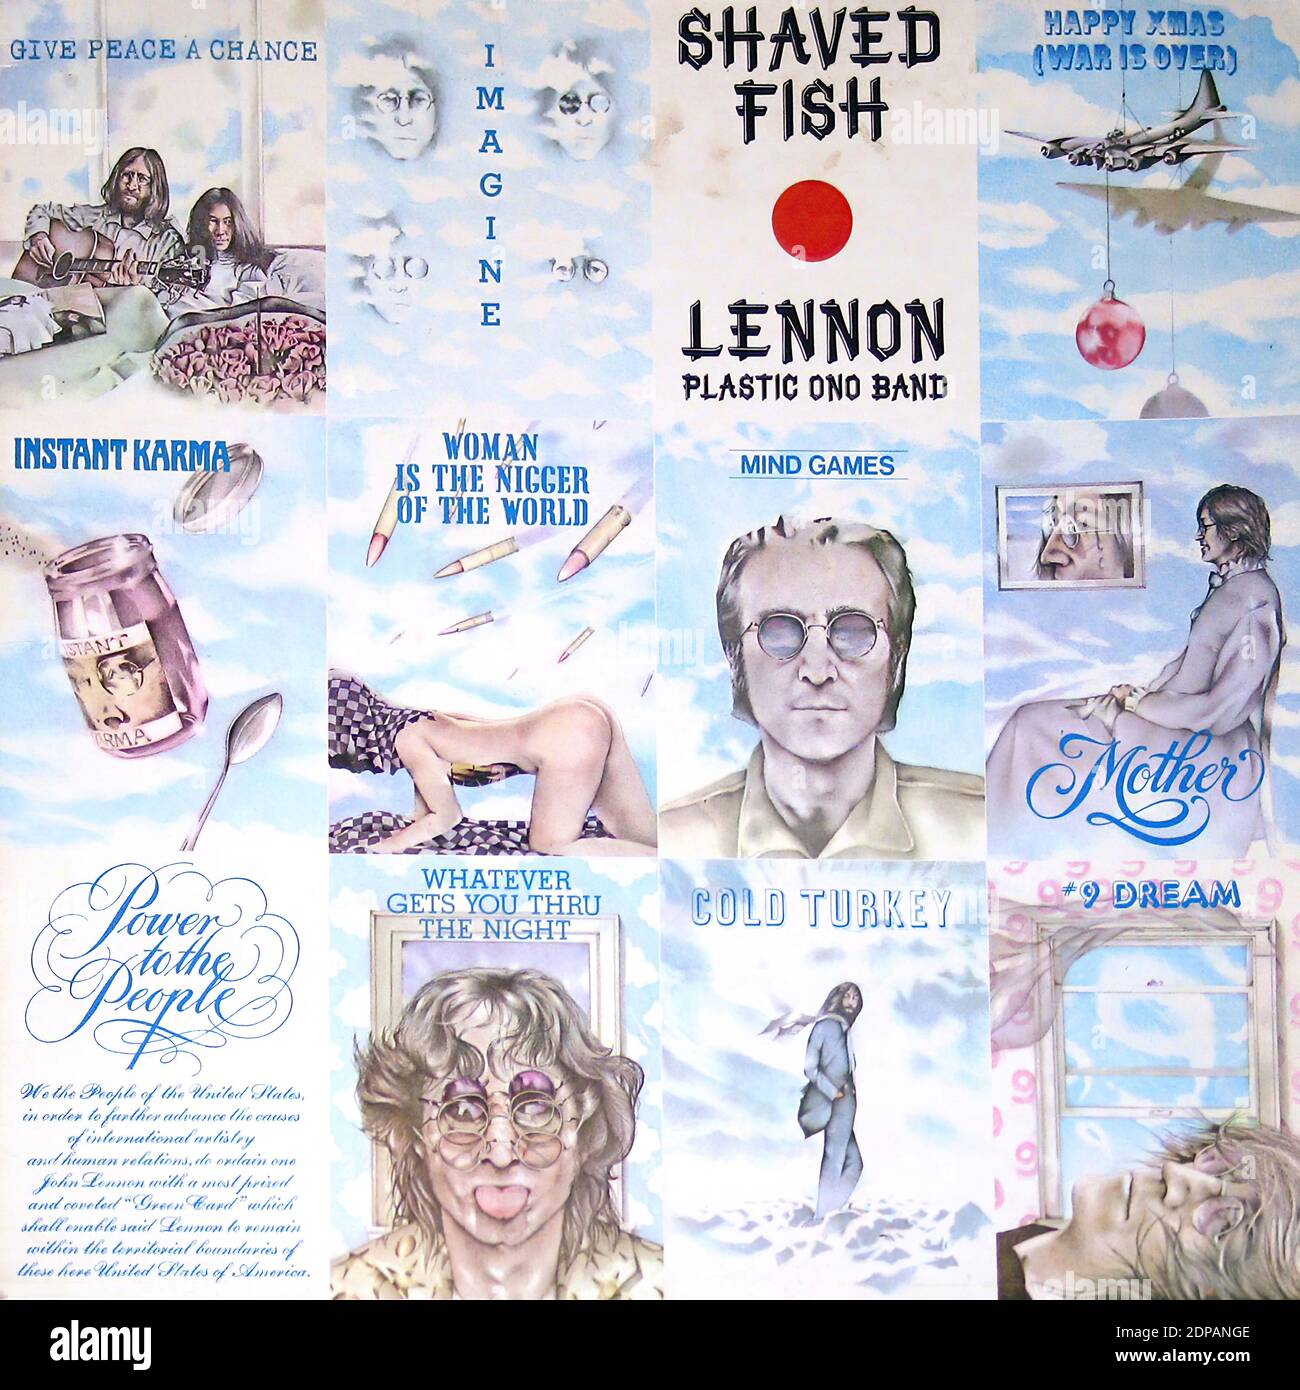 激安格安割引情報満載 カセット ジョン レノン John Lennon Shaved Fish